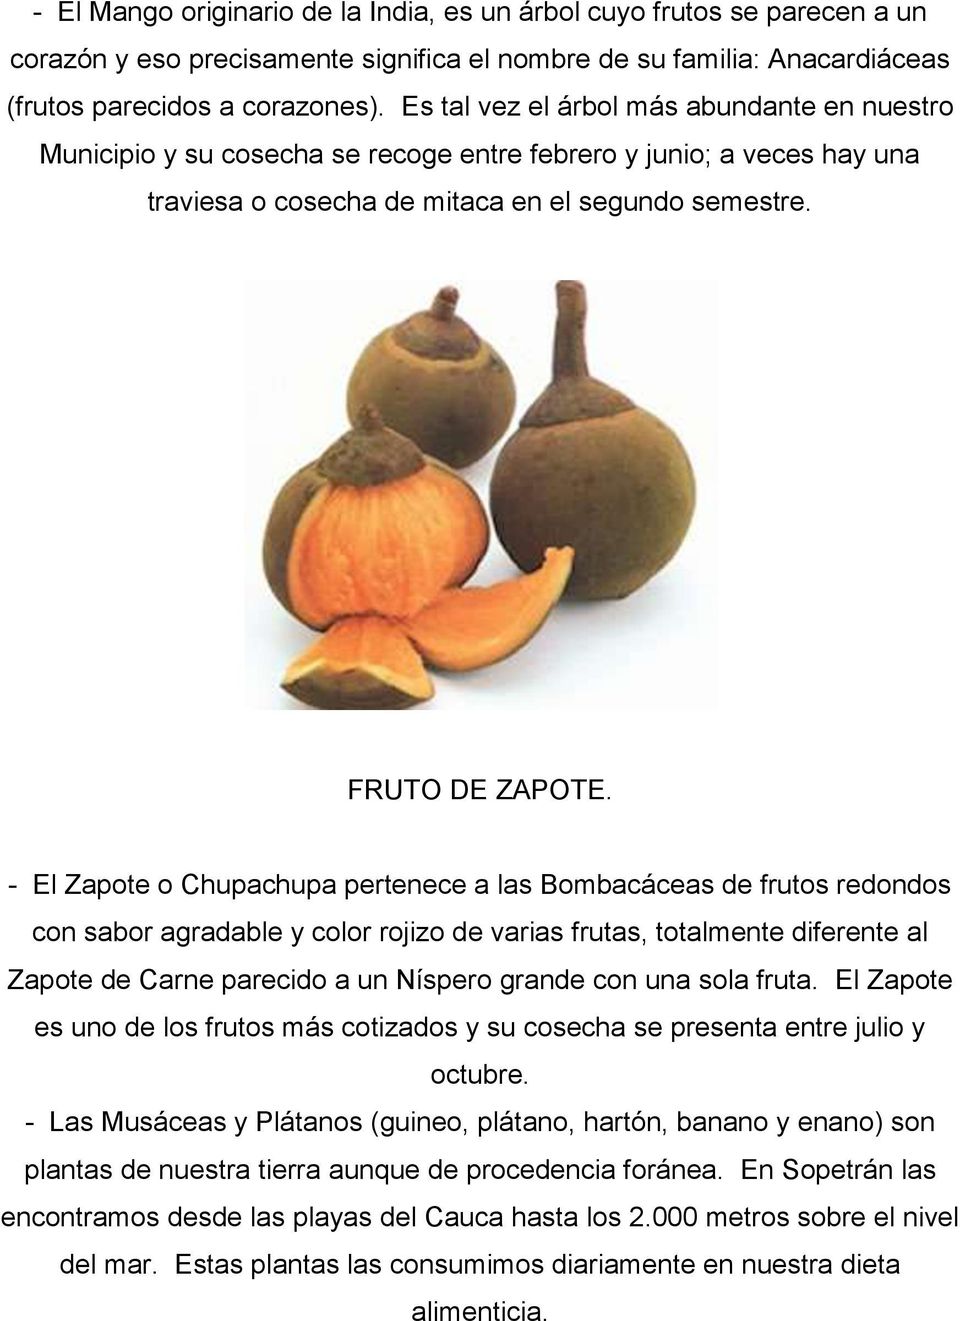 - El Zapote o Chupachupa pertenece a las Bombacáceas de frutos redondos con sabor agradable y color rojizo de varias frutas, totalmente diferente al Zapote de Carne parecido a un Níspero grande con